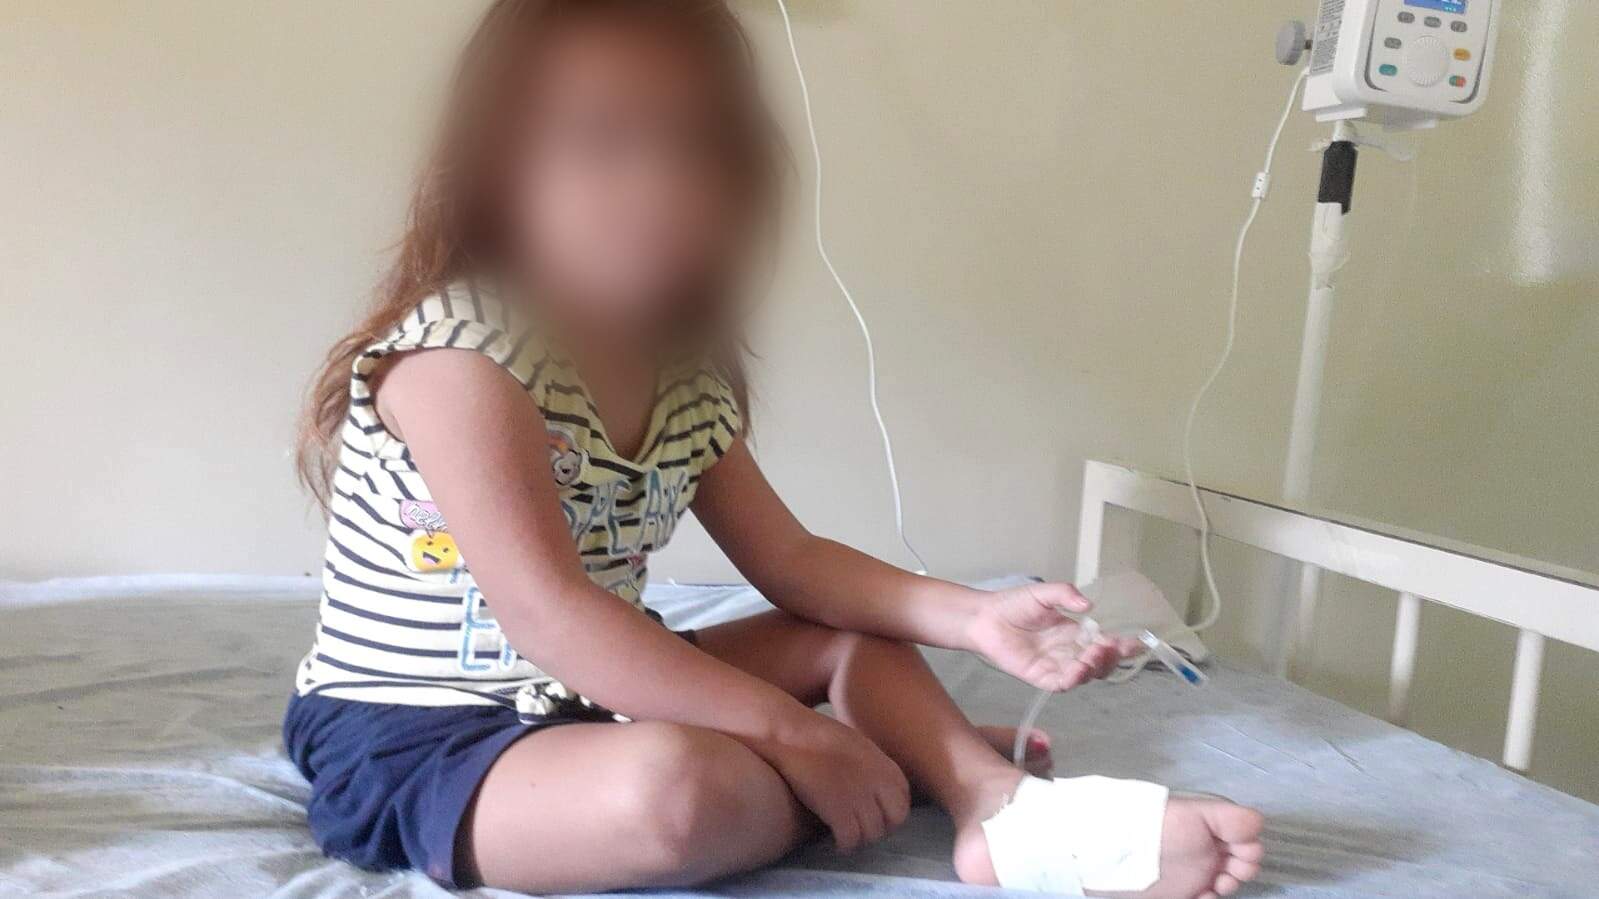 Com suspeita de meningite, menina aguarda há 3 dias por vaga em hospital